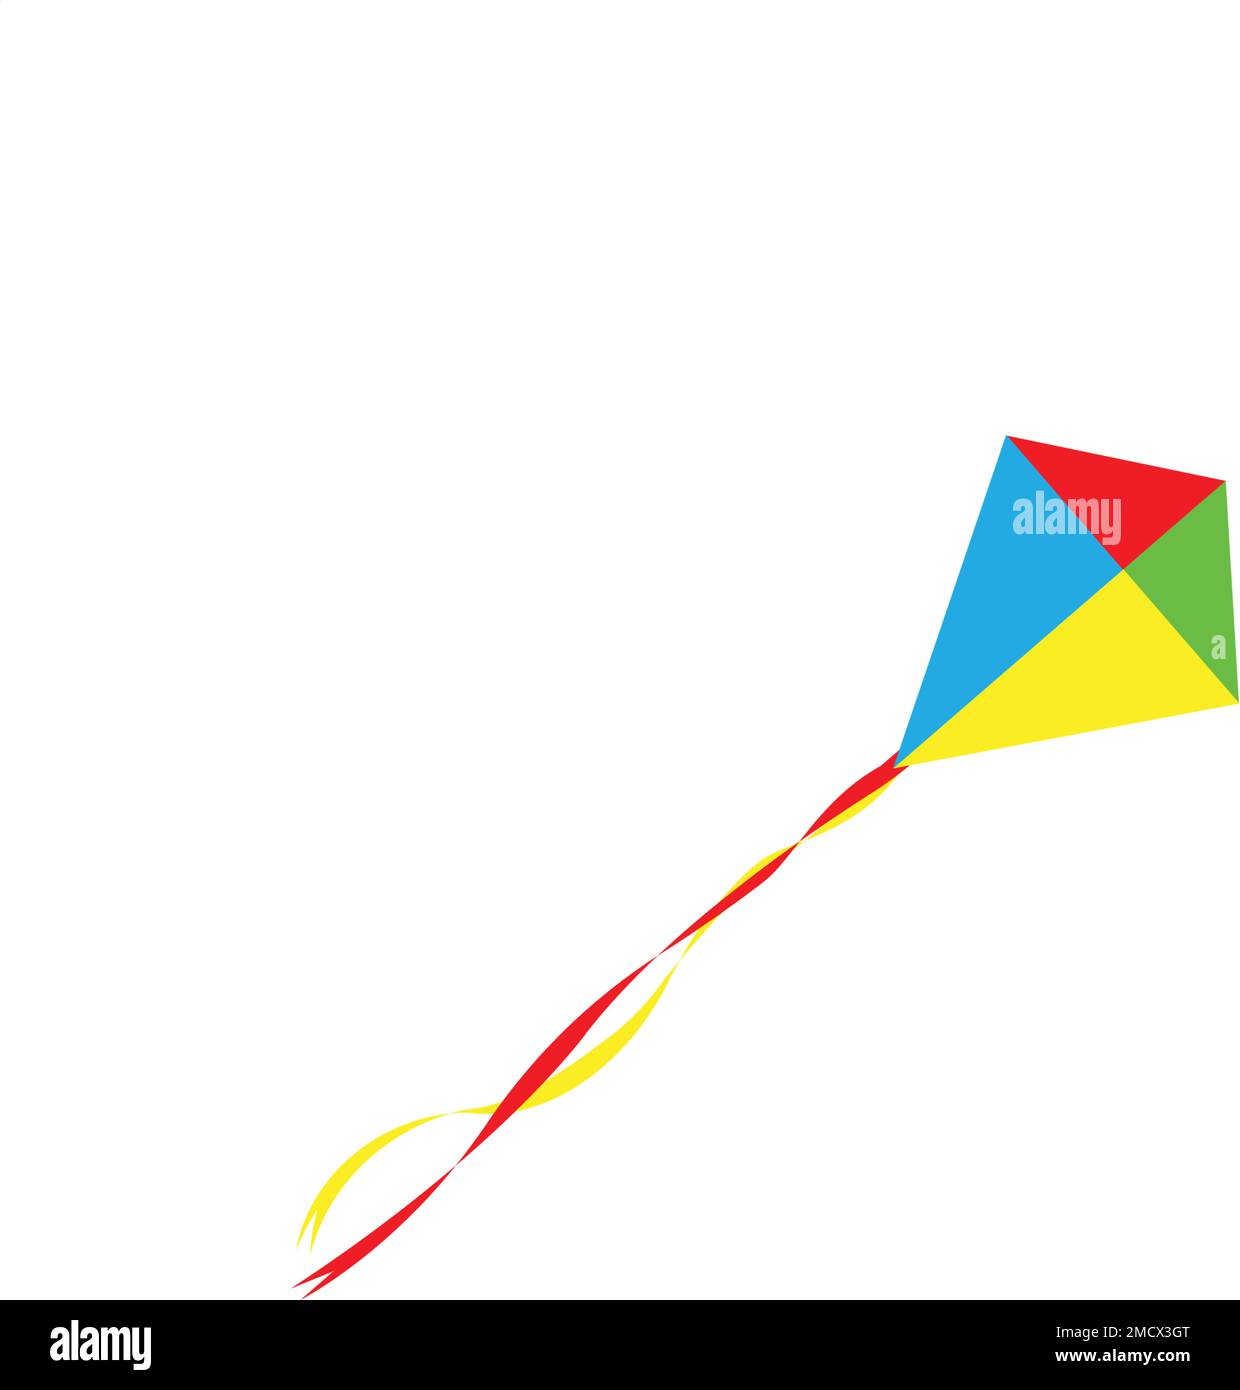 kite logo stock illustration design Stock Vector